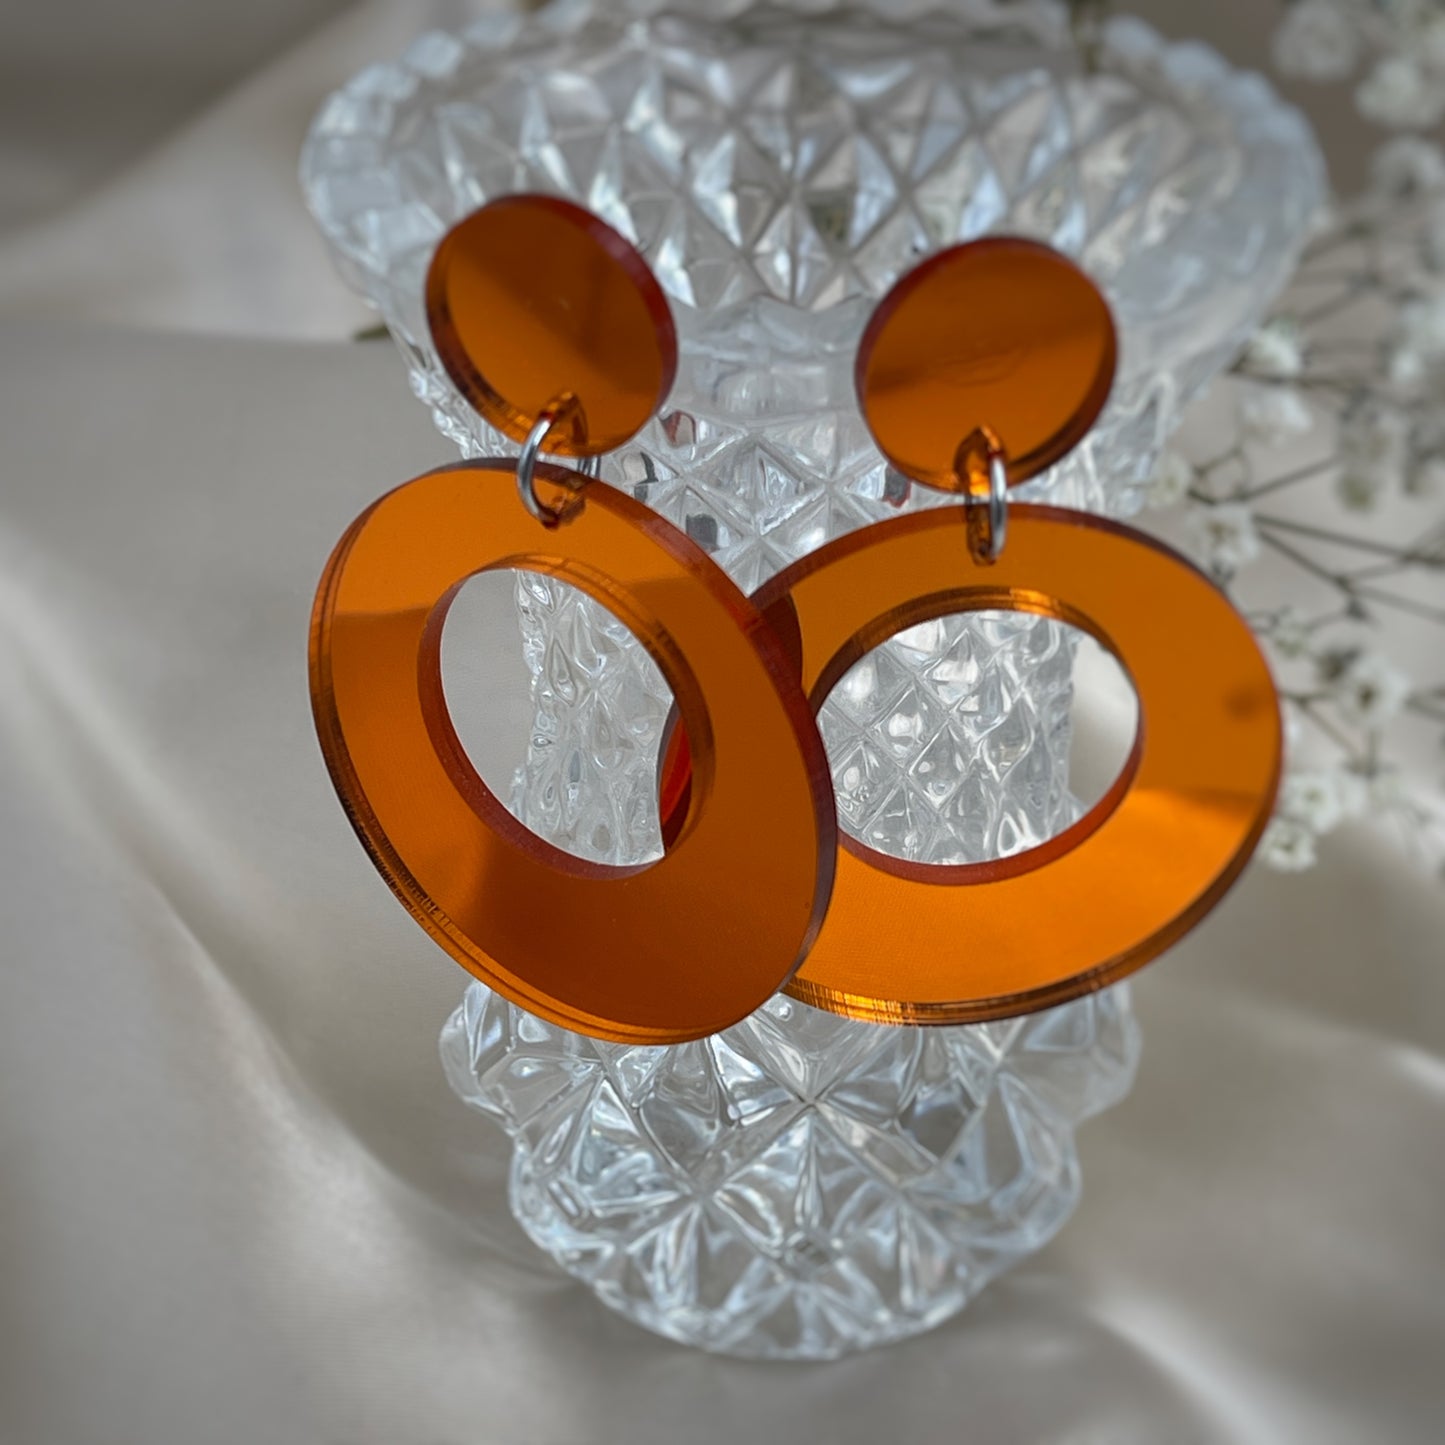 Kauniisti valoa heijastavat peilikorvakorut ovat laadukasta suomalaista käsityötä, ja ne ovat kevyet pitää korvassa. Värivaihtoehtoja löytyy useita, joten jokaista asukokonaisuutta ja tilaisuutta täydentävä korupari löytyy varmasti.Tämä koru on oranssi.